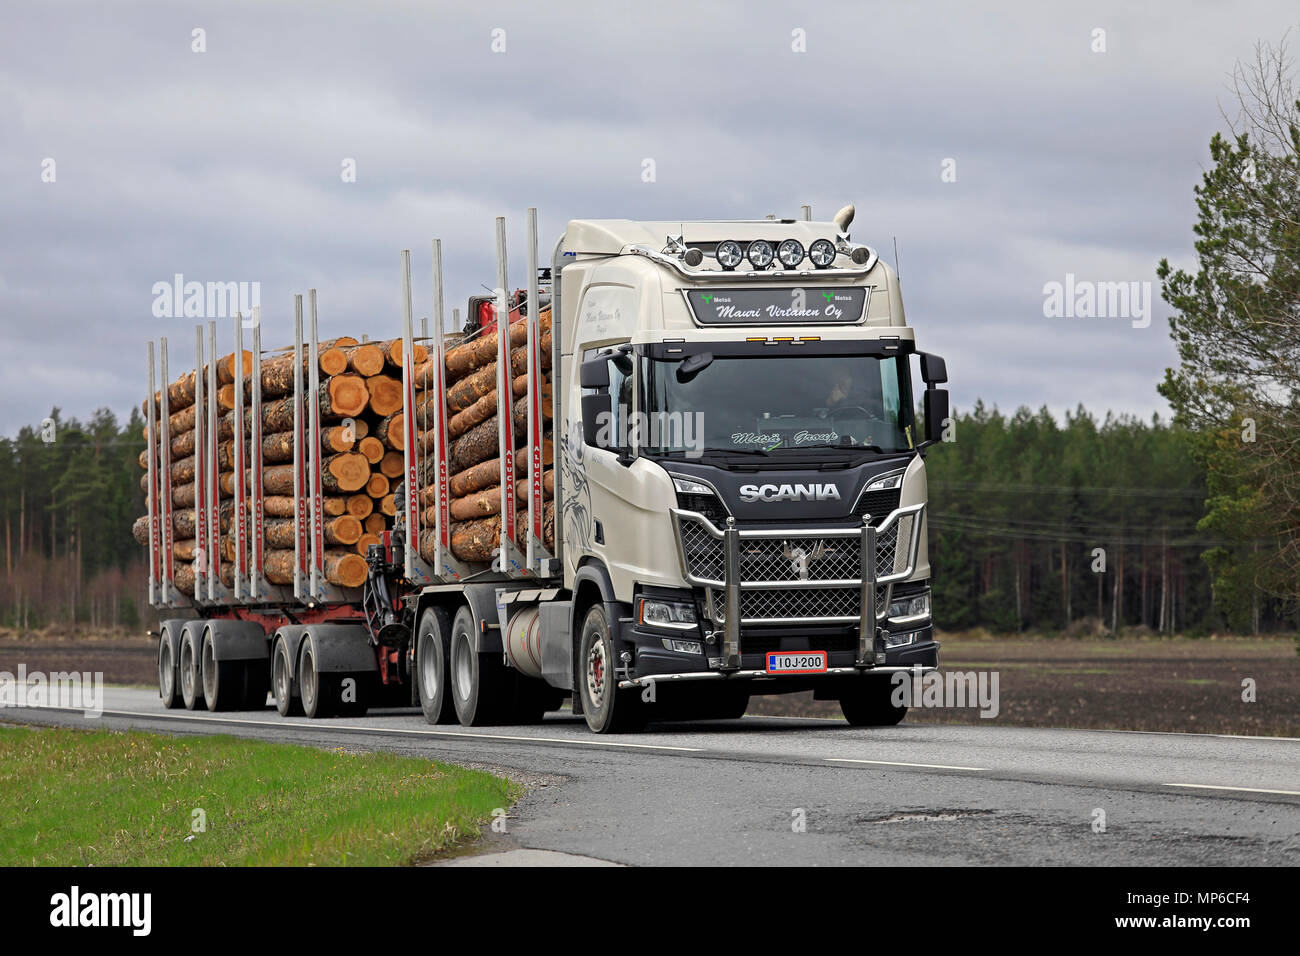 Nächste Generation Scania logging Truck von Mauri Virtanen Oy hols Kiefer in die Mühle entlang der Straße an bewölkten Tag des Frühlings. Poytya, Finnland - 4. Mai, 18. Stockfoto